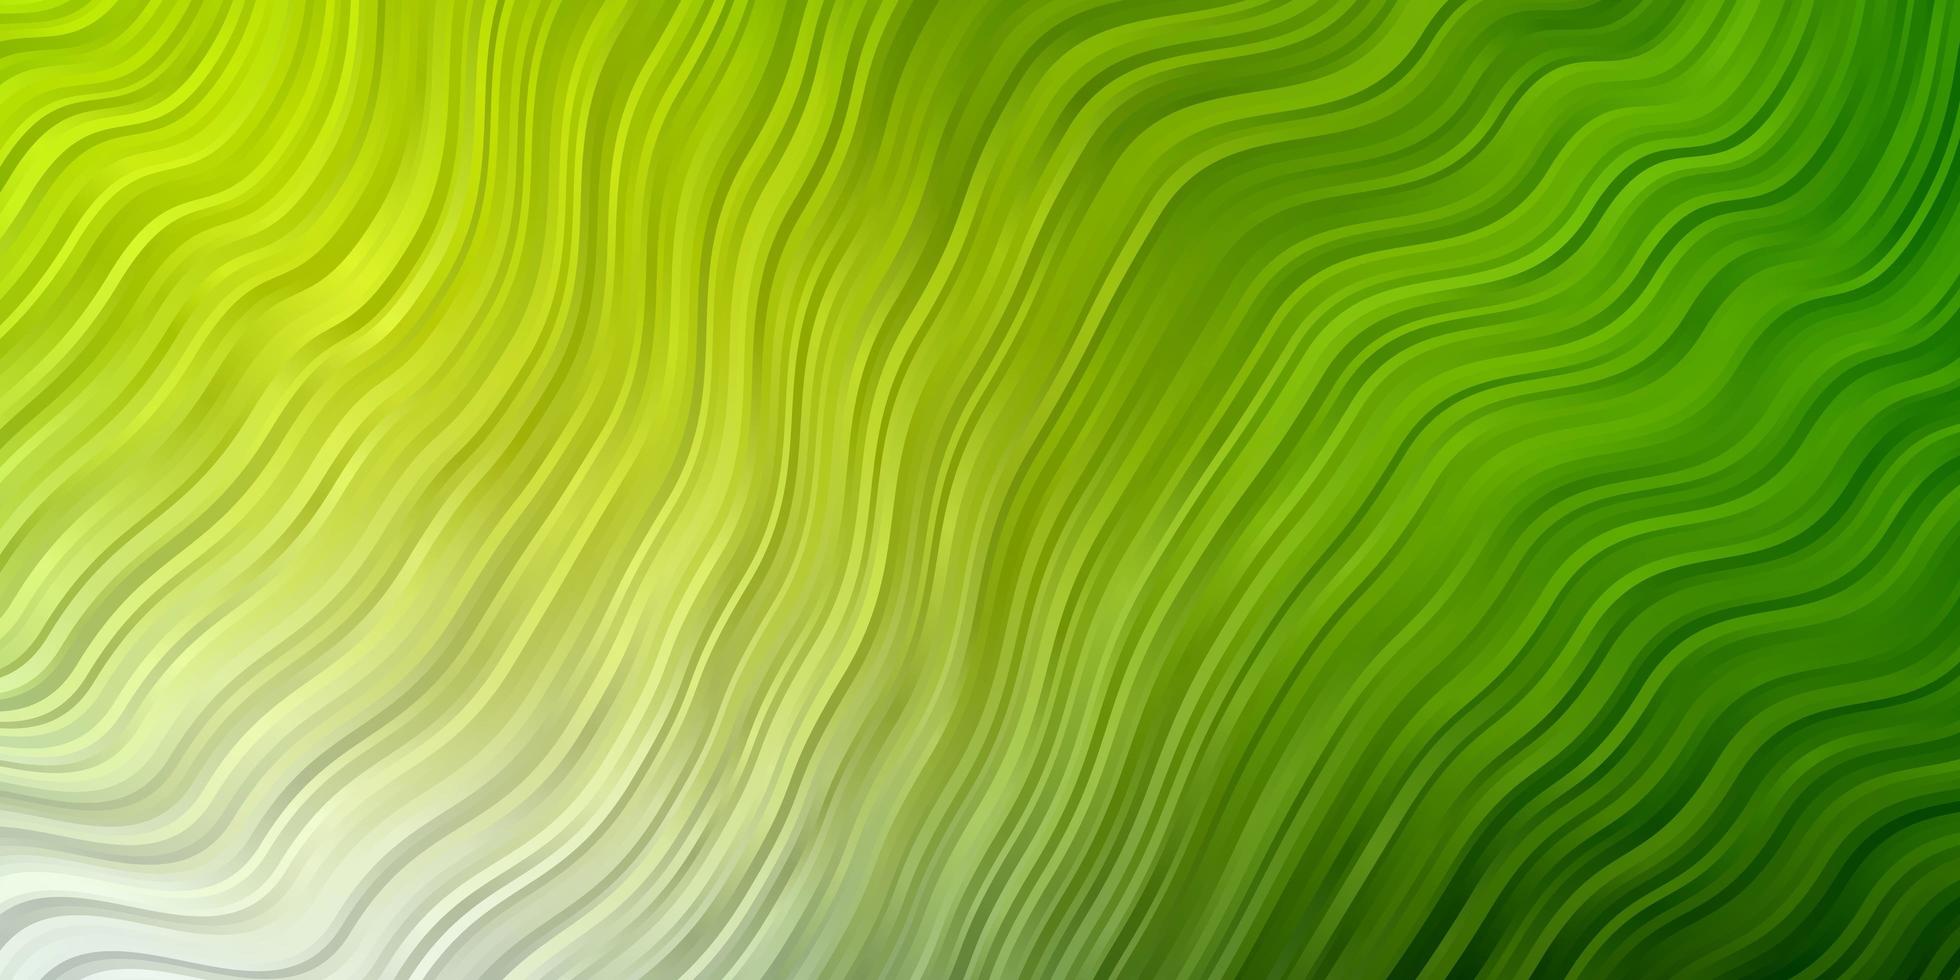 grön bakgrund med böjda linjer. vektor